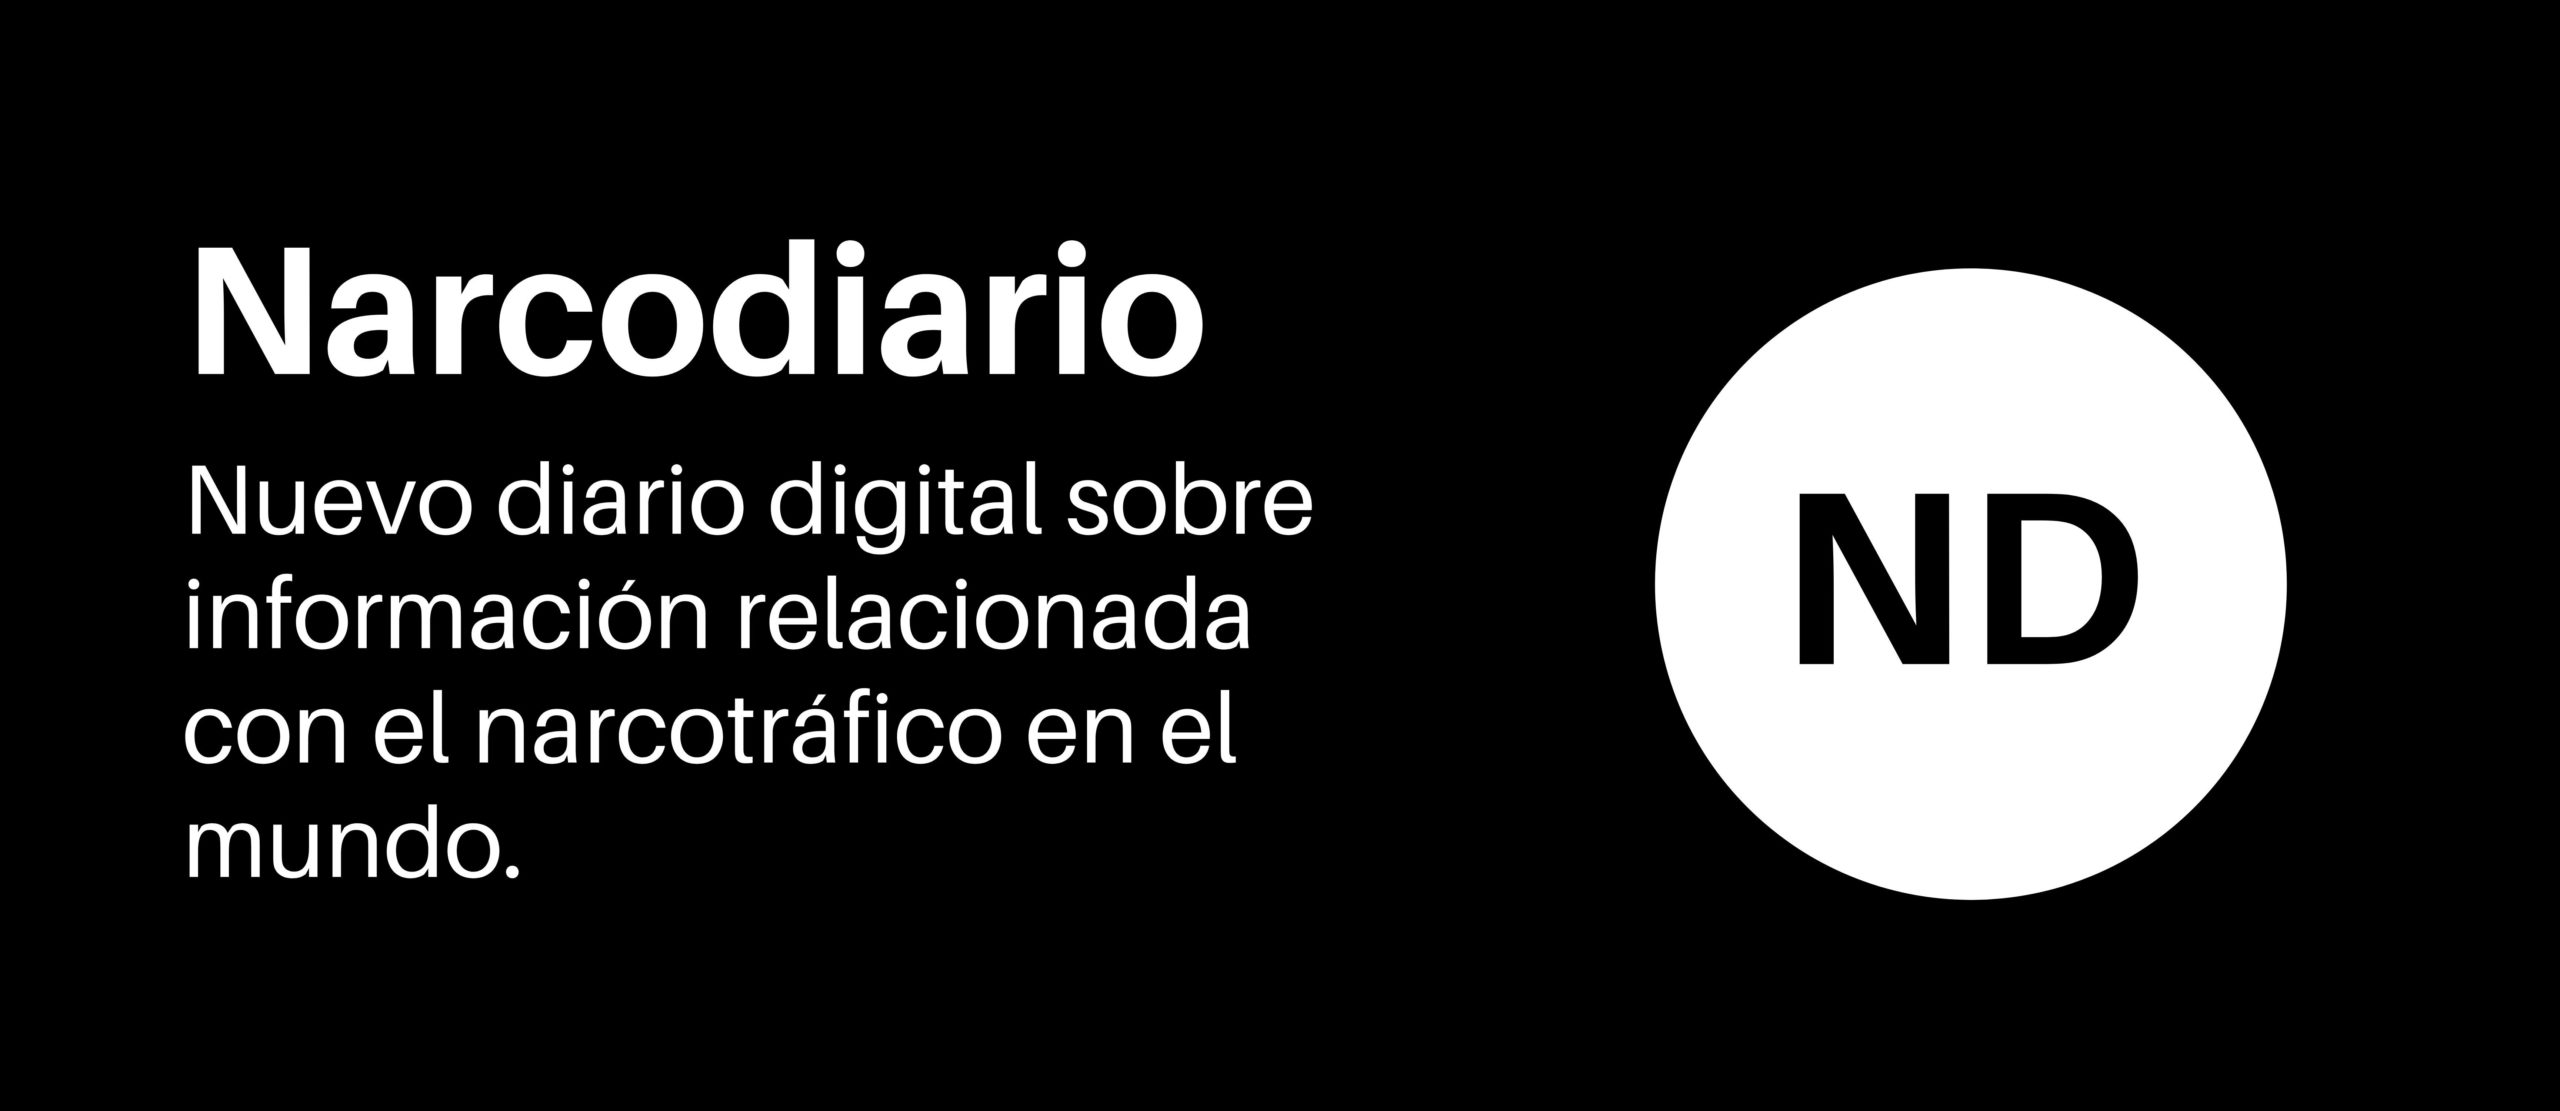 Narcodiario - Nuevo diario digital sobre narcotráfico